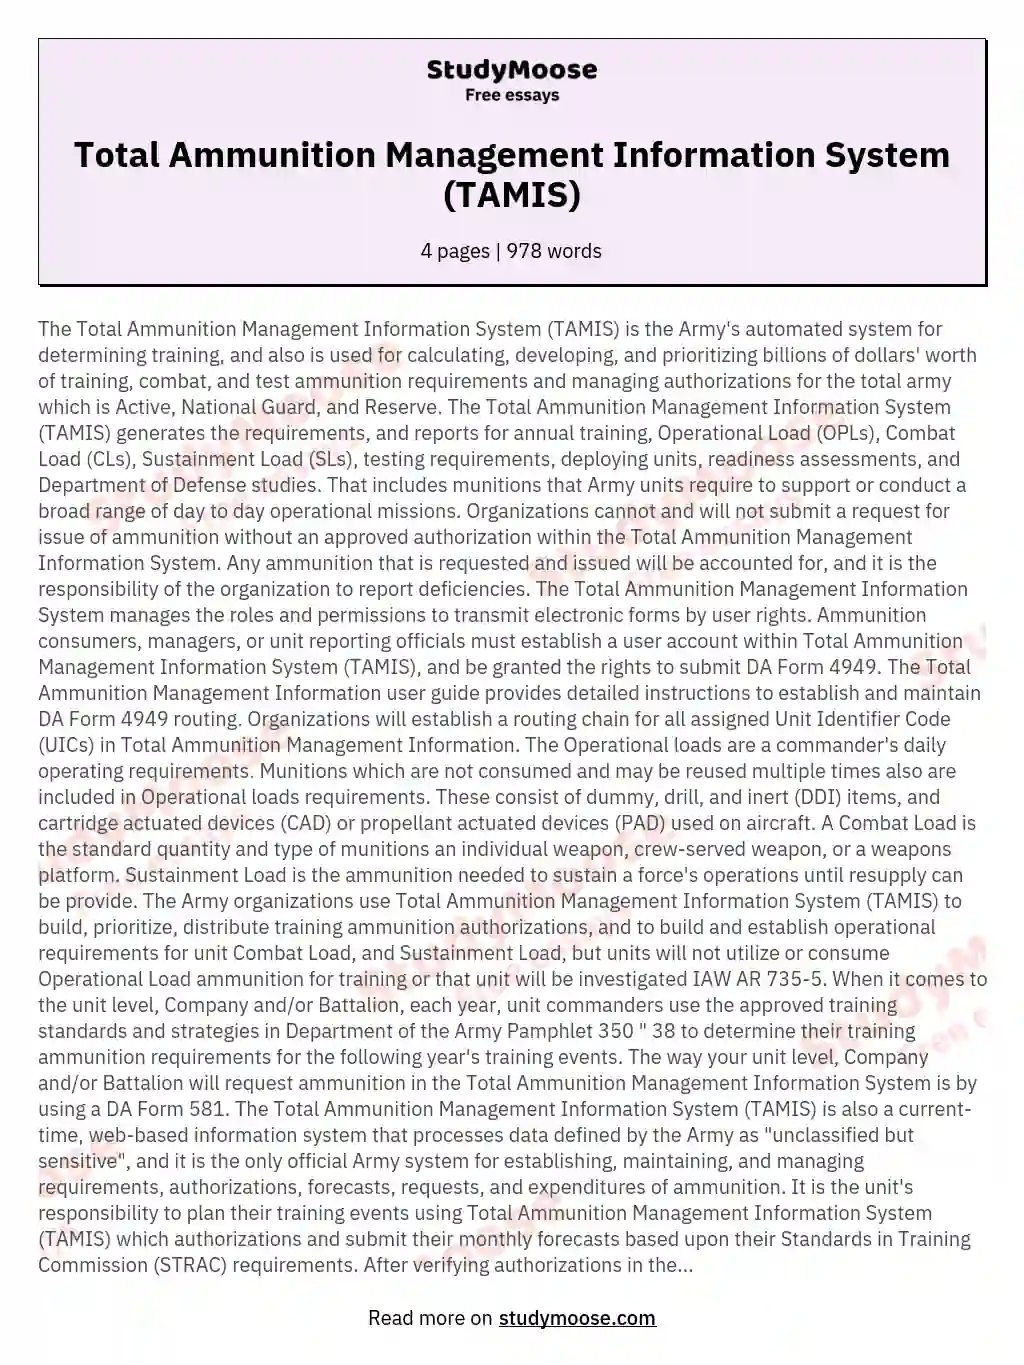 Total Ammunition Management Information System (TAMIS) essay